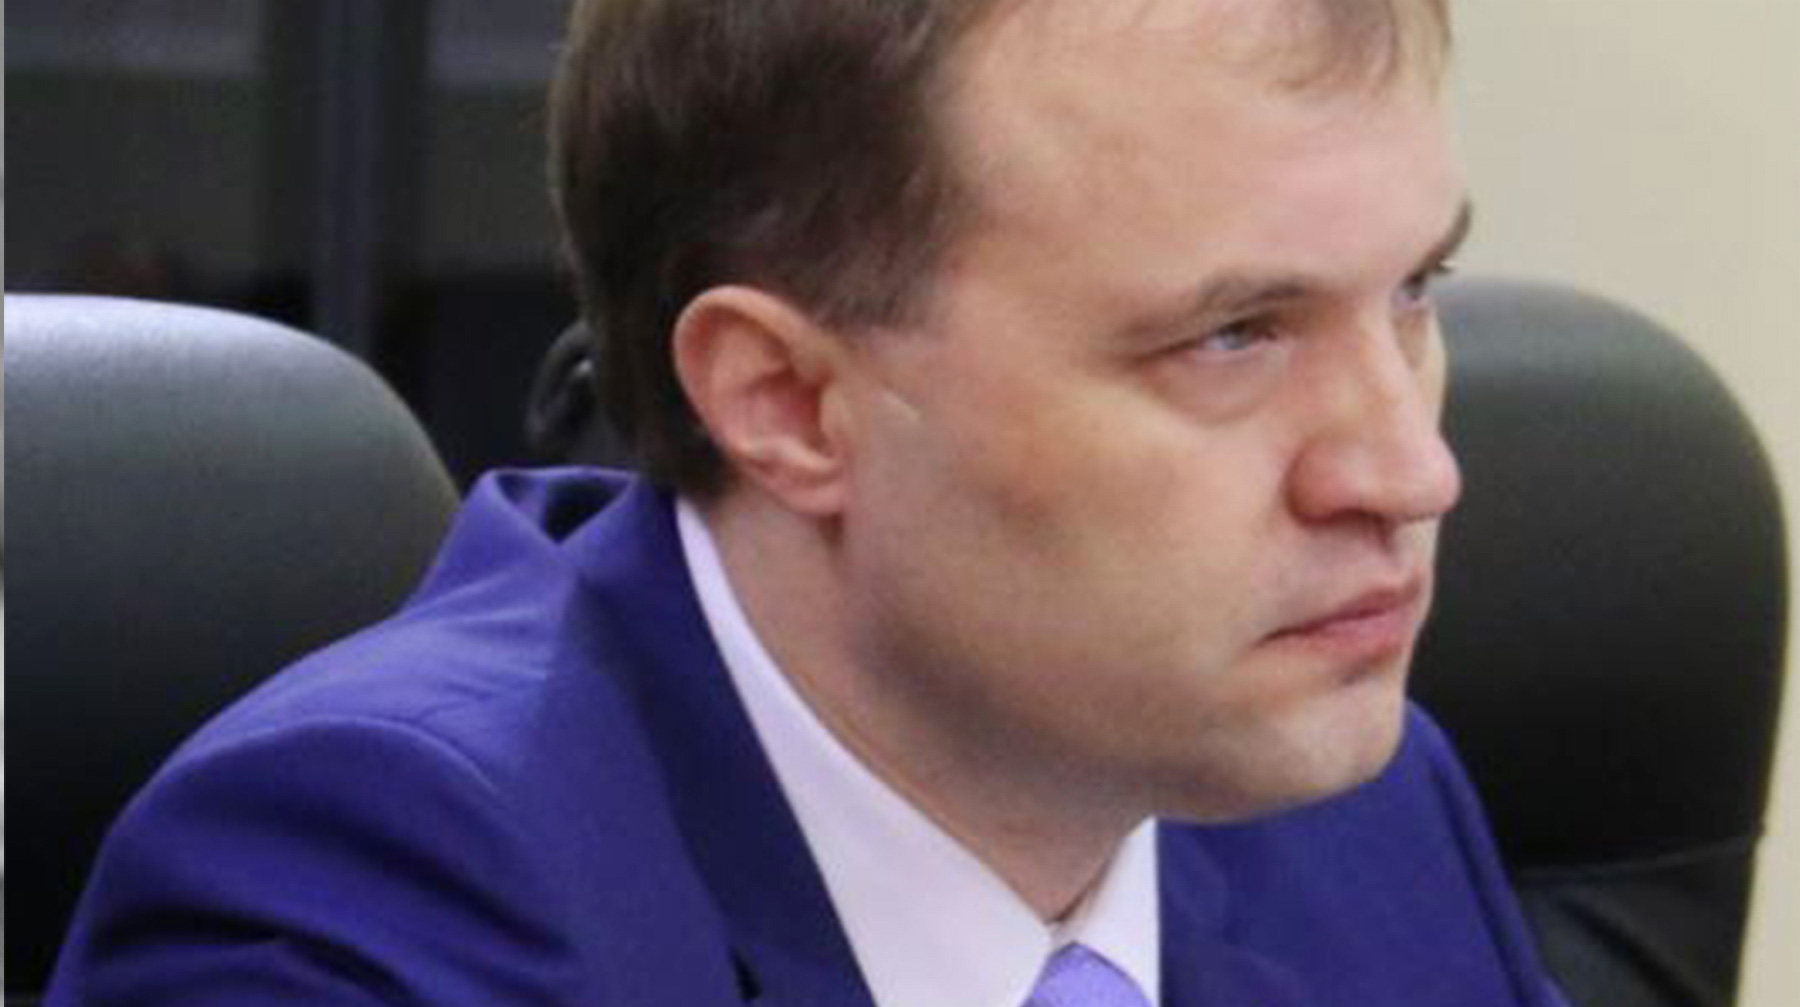 Евгений Шевчук также лишен наград и не сможет в течение пяти лет после освобождения занимать государственные посты Евгений Шевчук